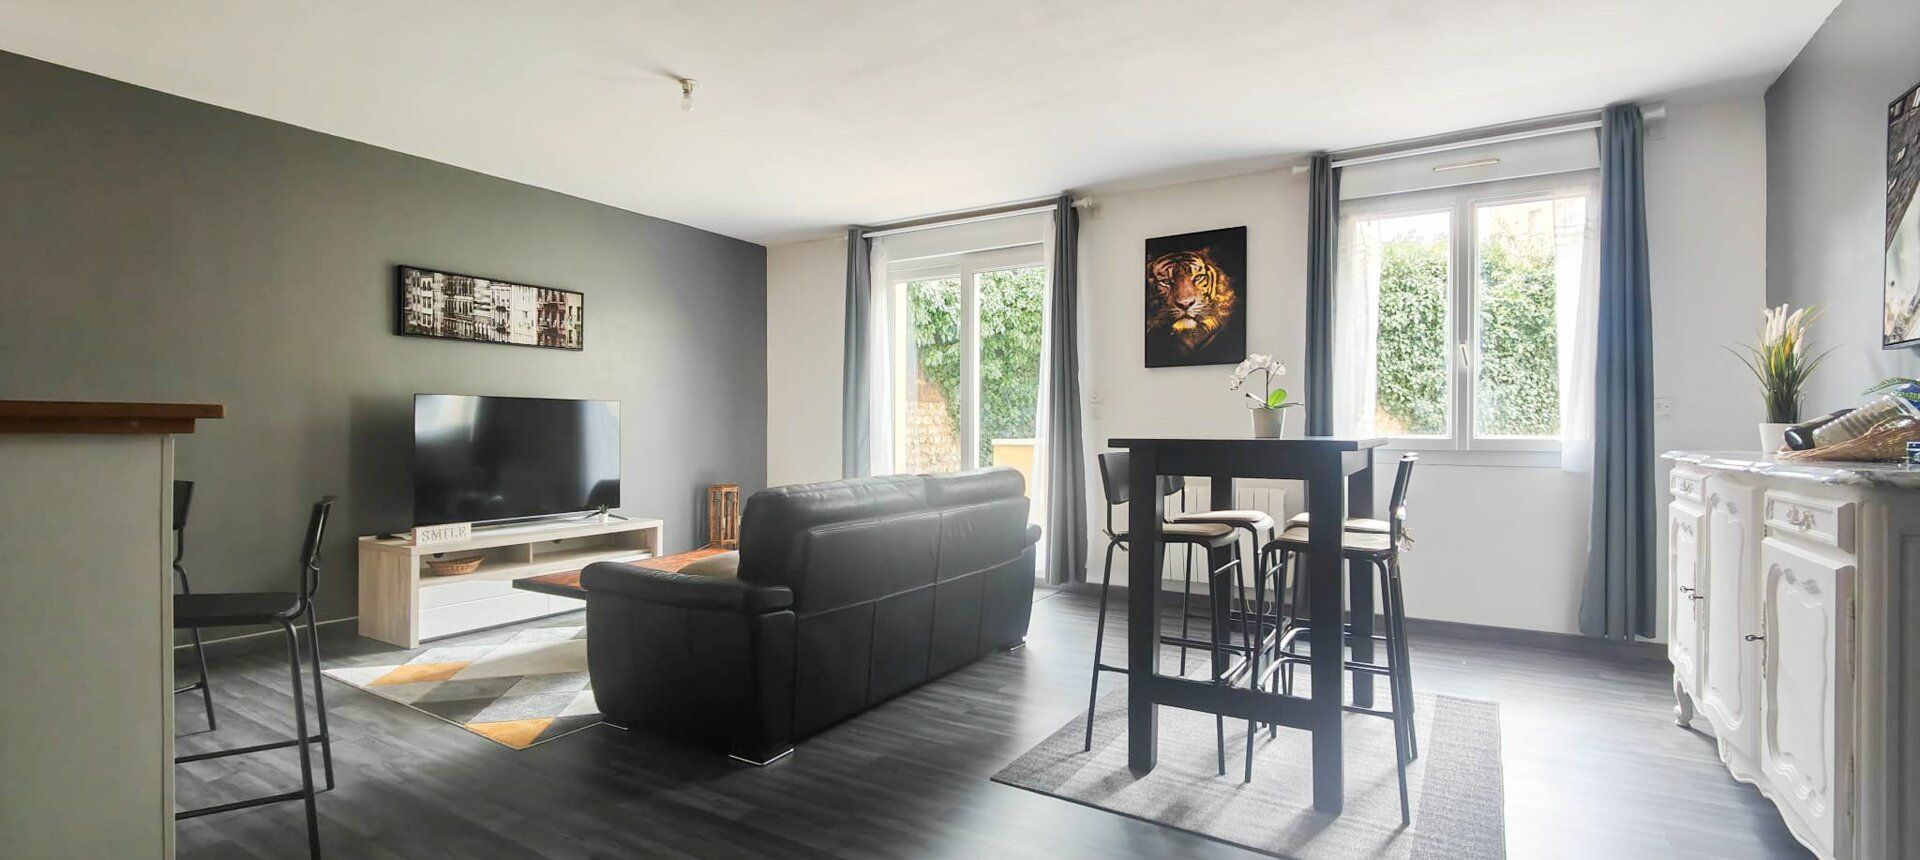 Appartement à vendre 4 83.56m2 à Rouen vignette-3